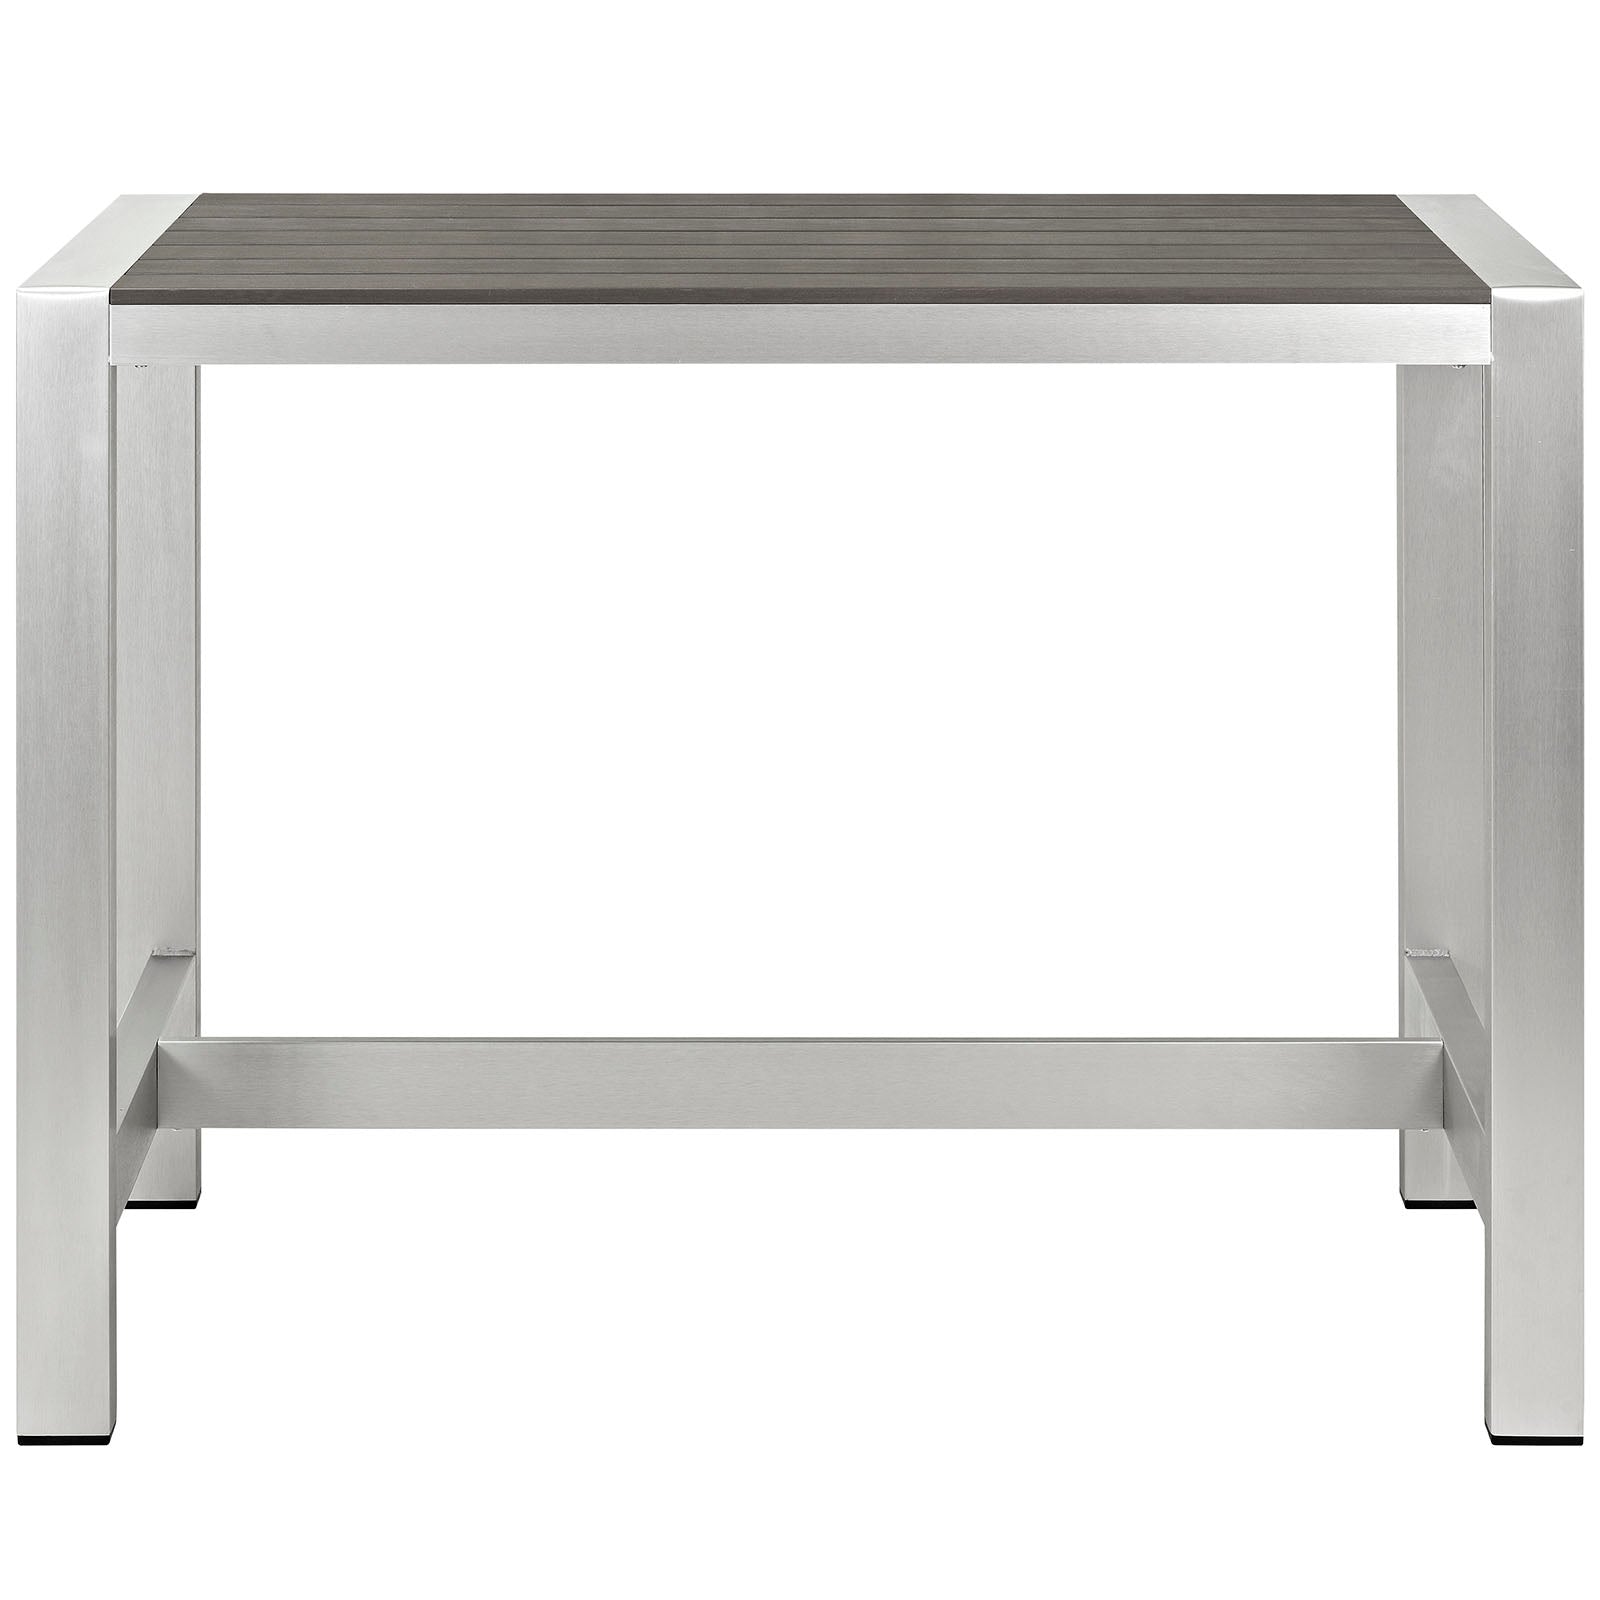 Modway - Shore Outdoor Patio Aluminum Rectangle Bar Table - EEI-2253